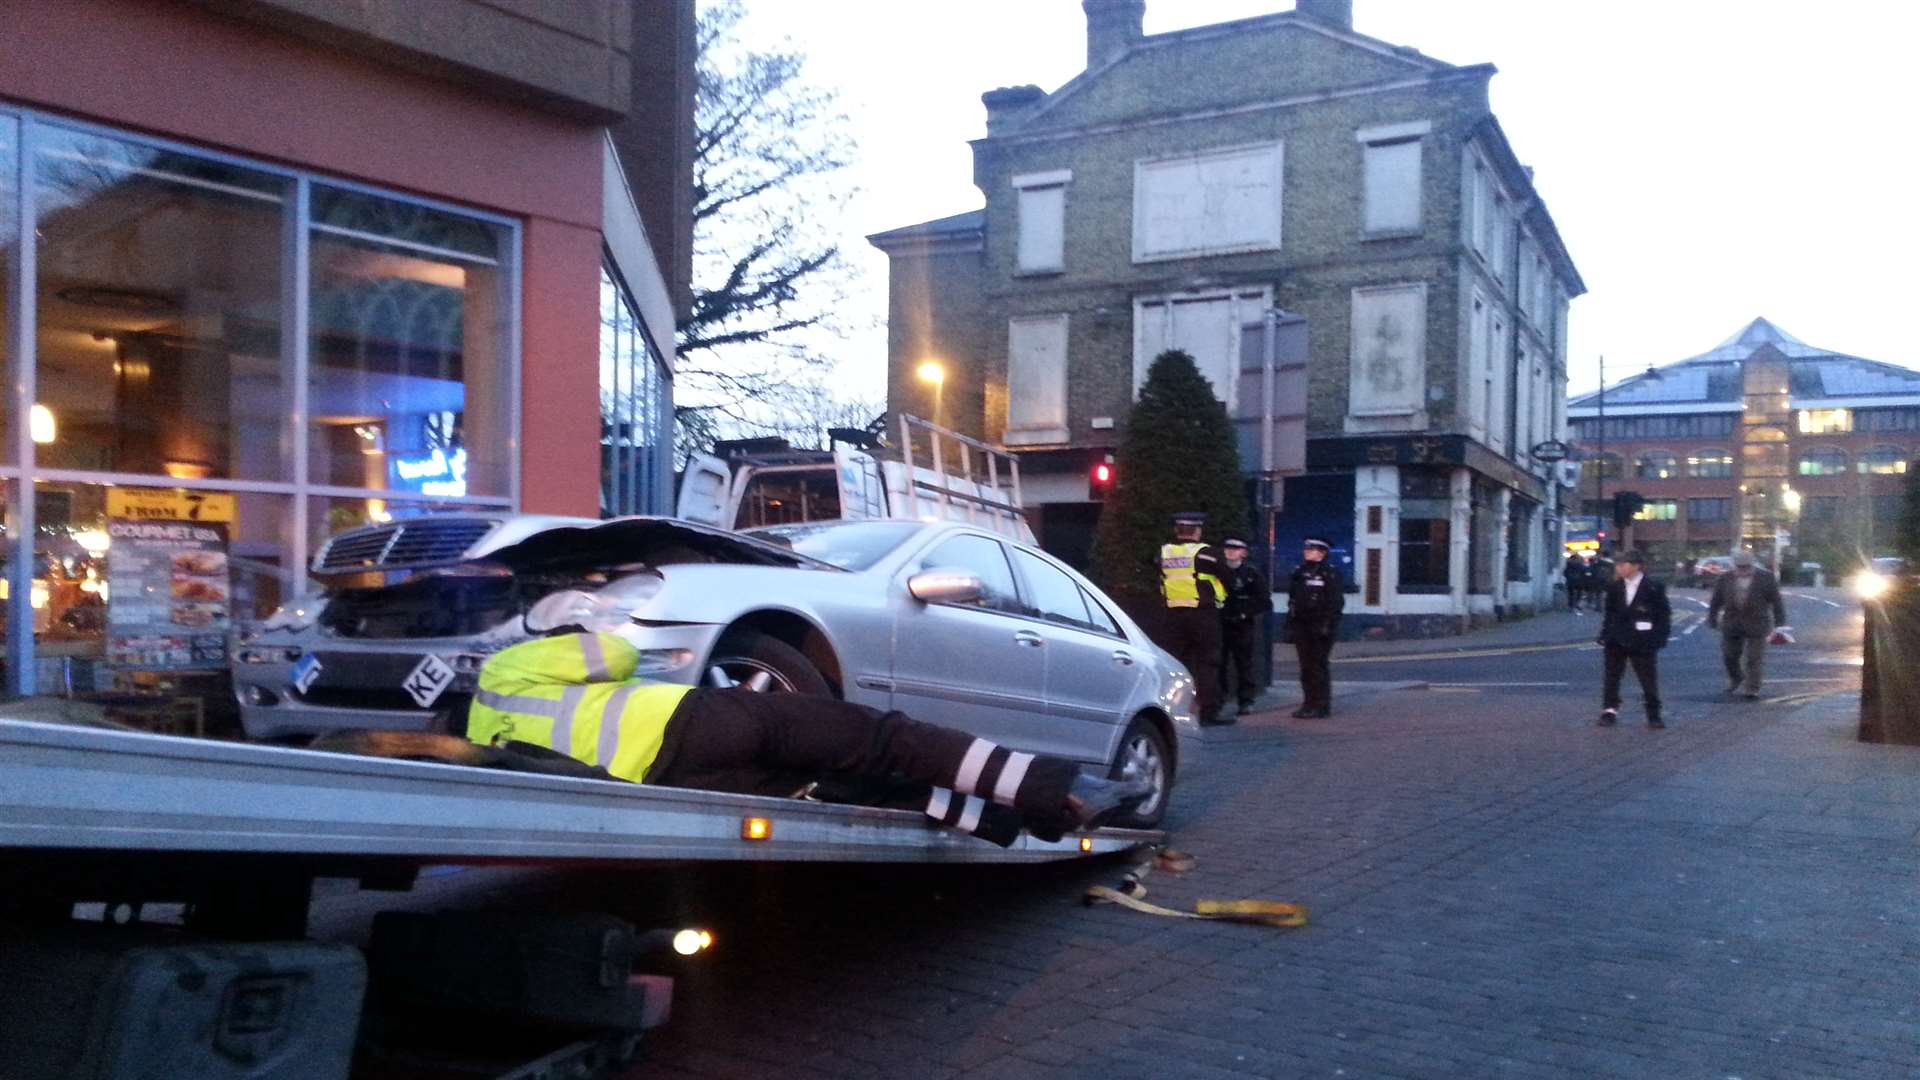 The damaged car is taken away